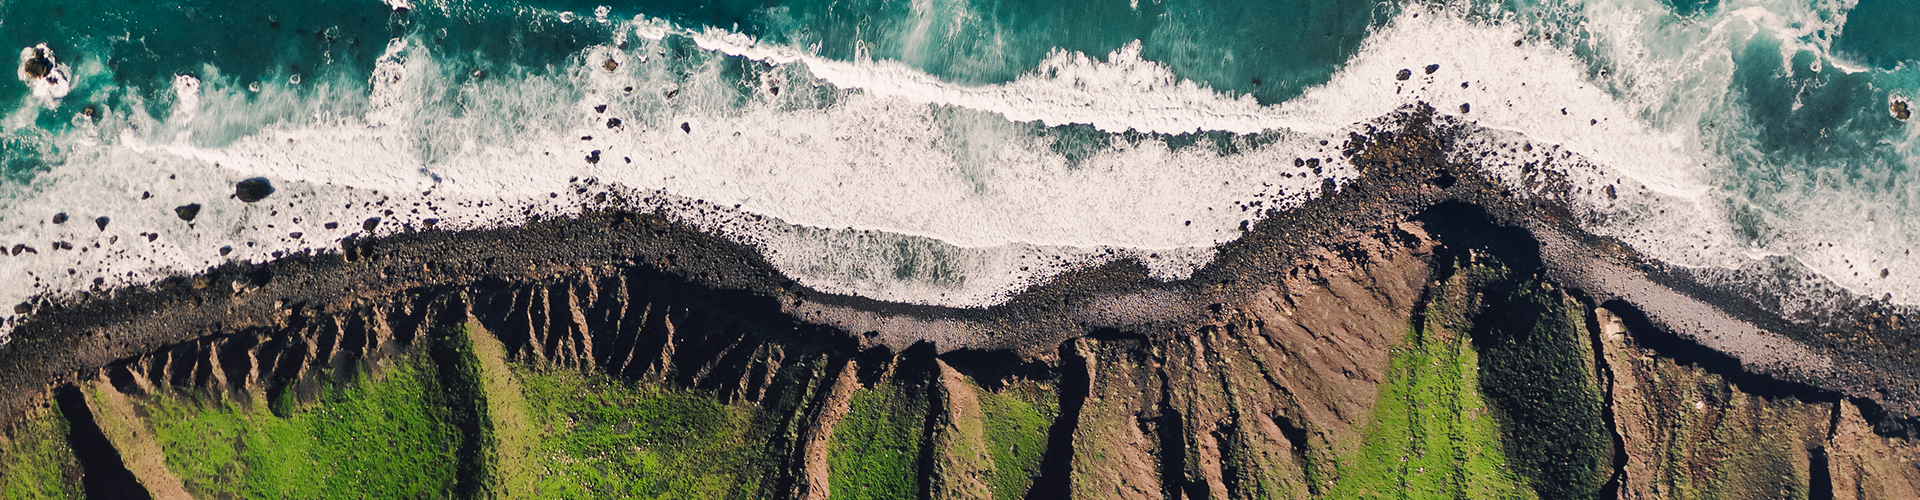 Libro Centenario - Imagen de acantilado junto a las olas del mar